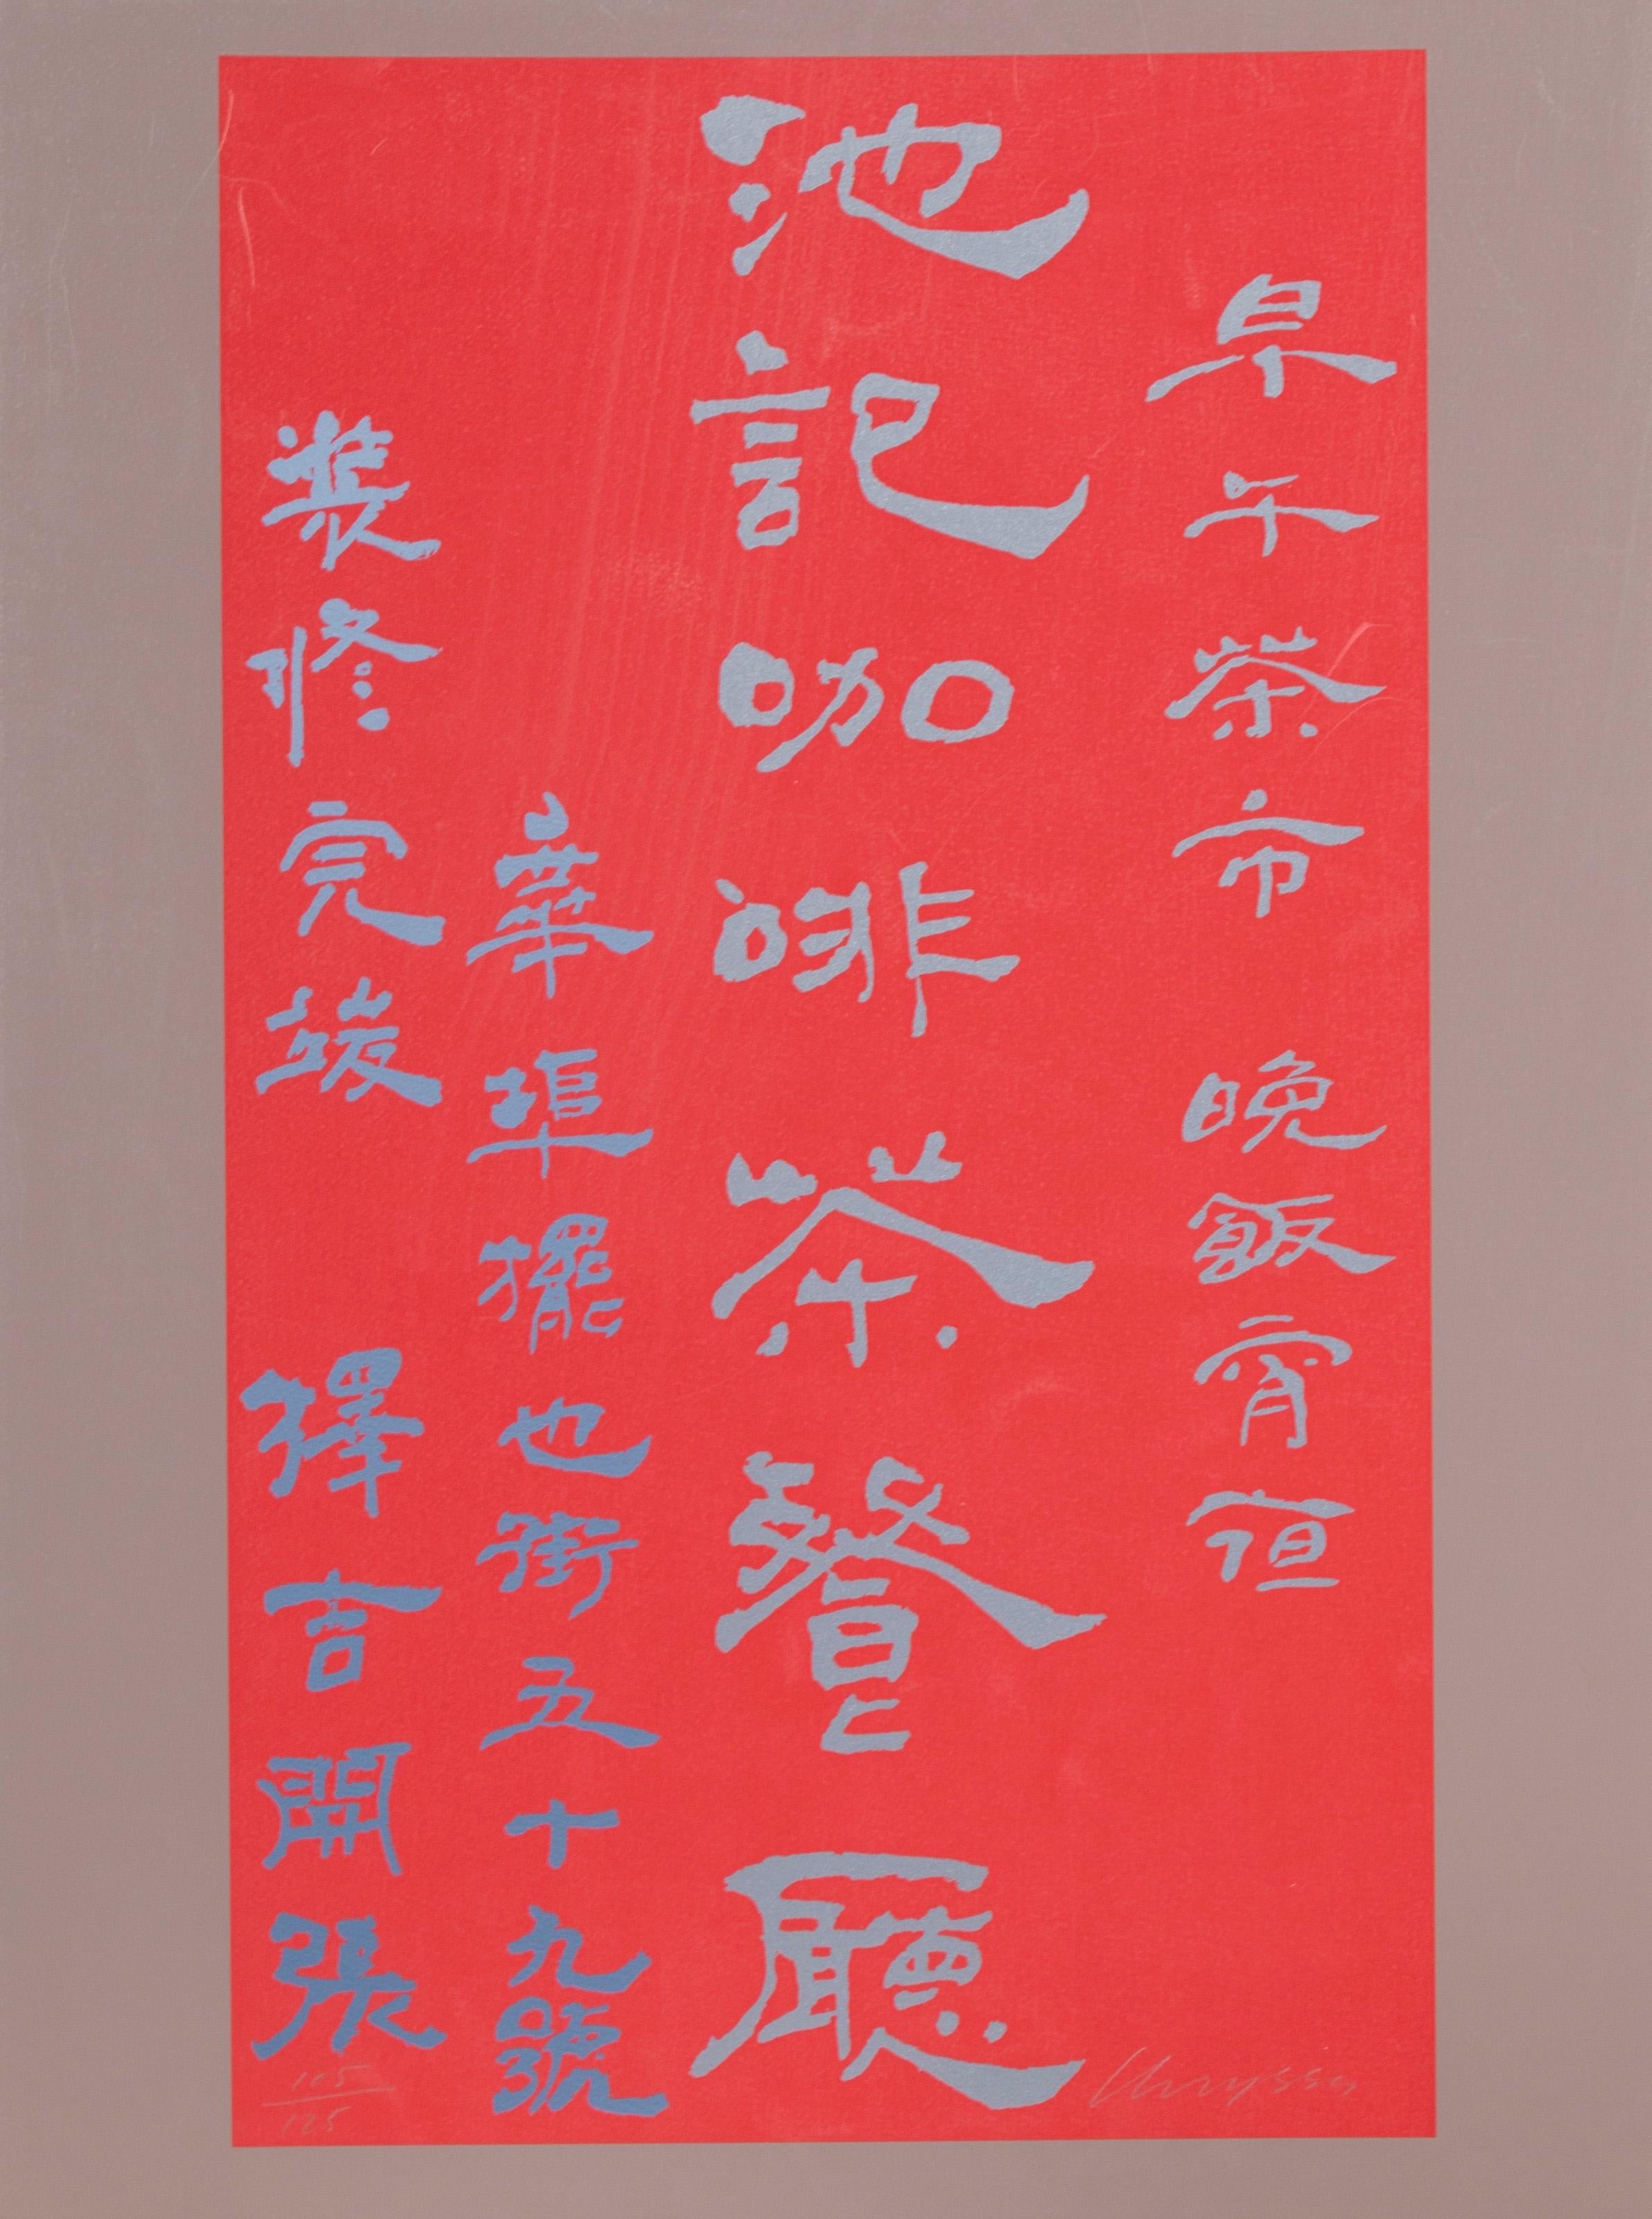 Untitled – Chinese Characters – Konzeptueller Kunst-Raumteiler von Chryssa